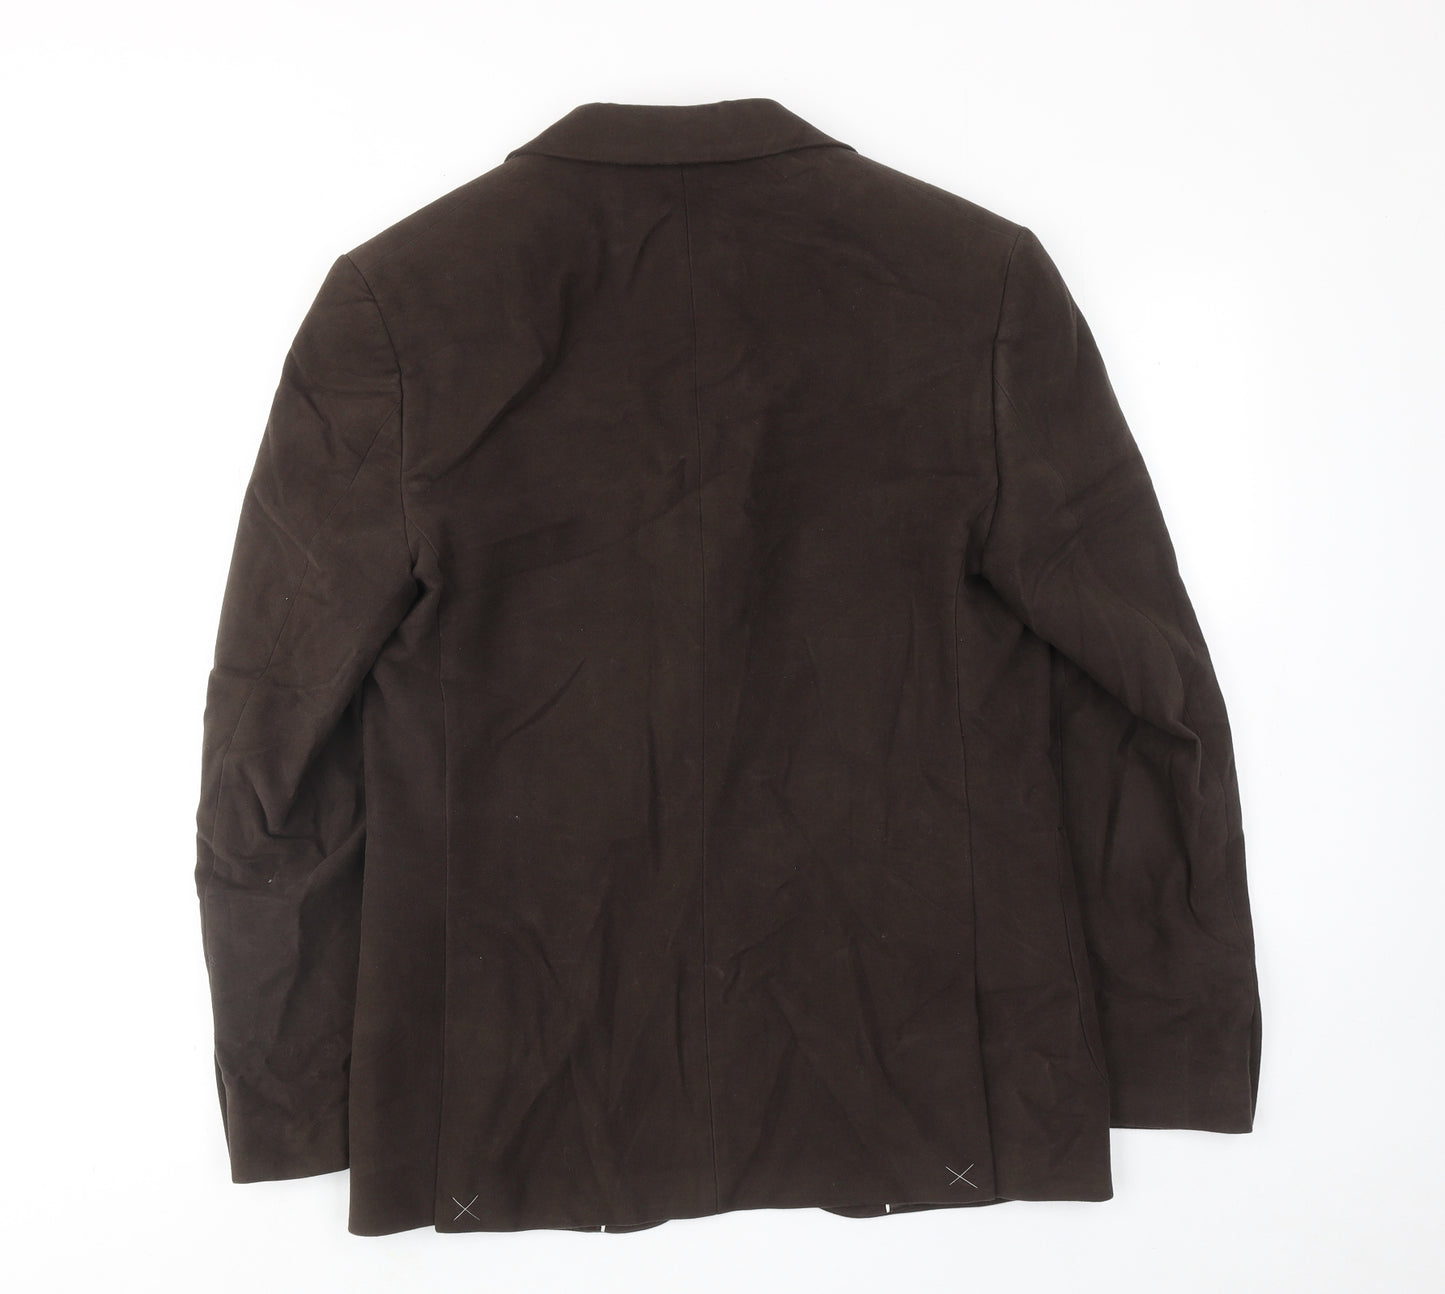 Marks and Spencer Mens Brown Cotton Jacket Blazer Size 38 Regular